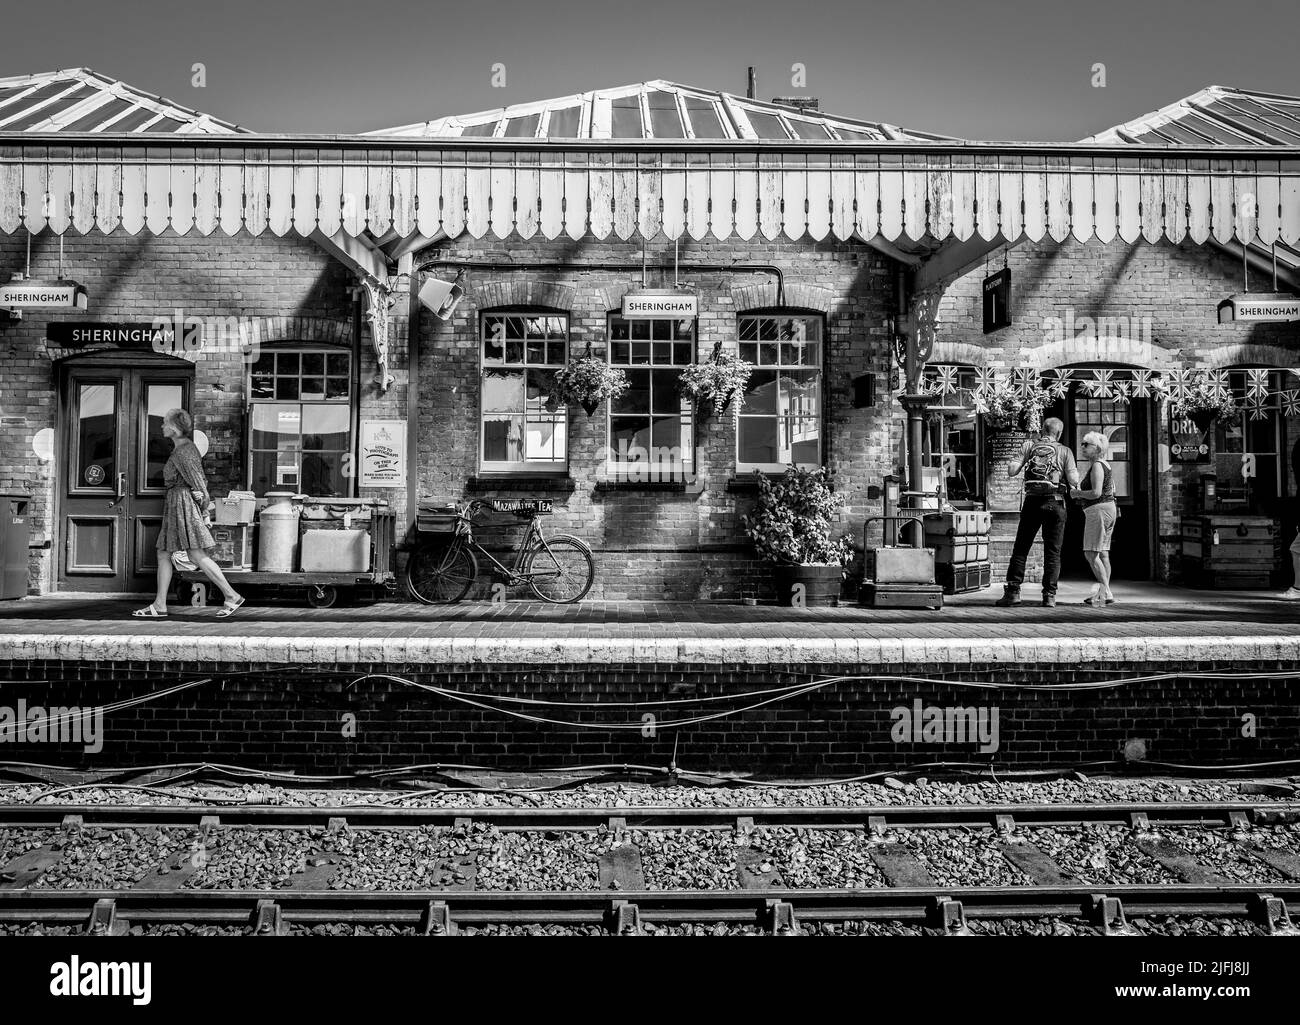 Pasajeros y turistas en la plataforma en la histórica estación ferroviaria de Sheringham que es parte de la línea ferroviaria North Norfolk. Foto de stock